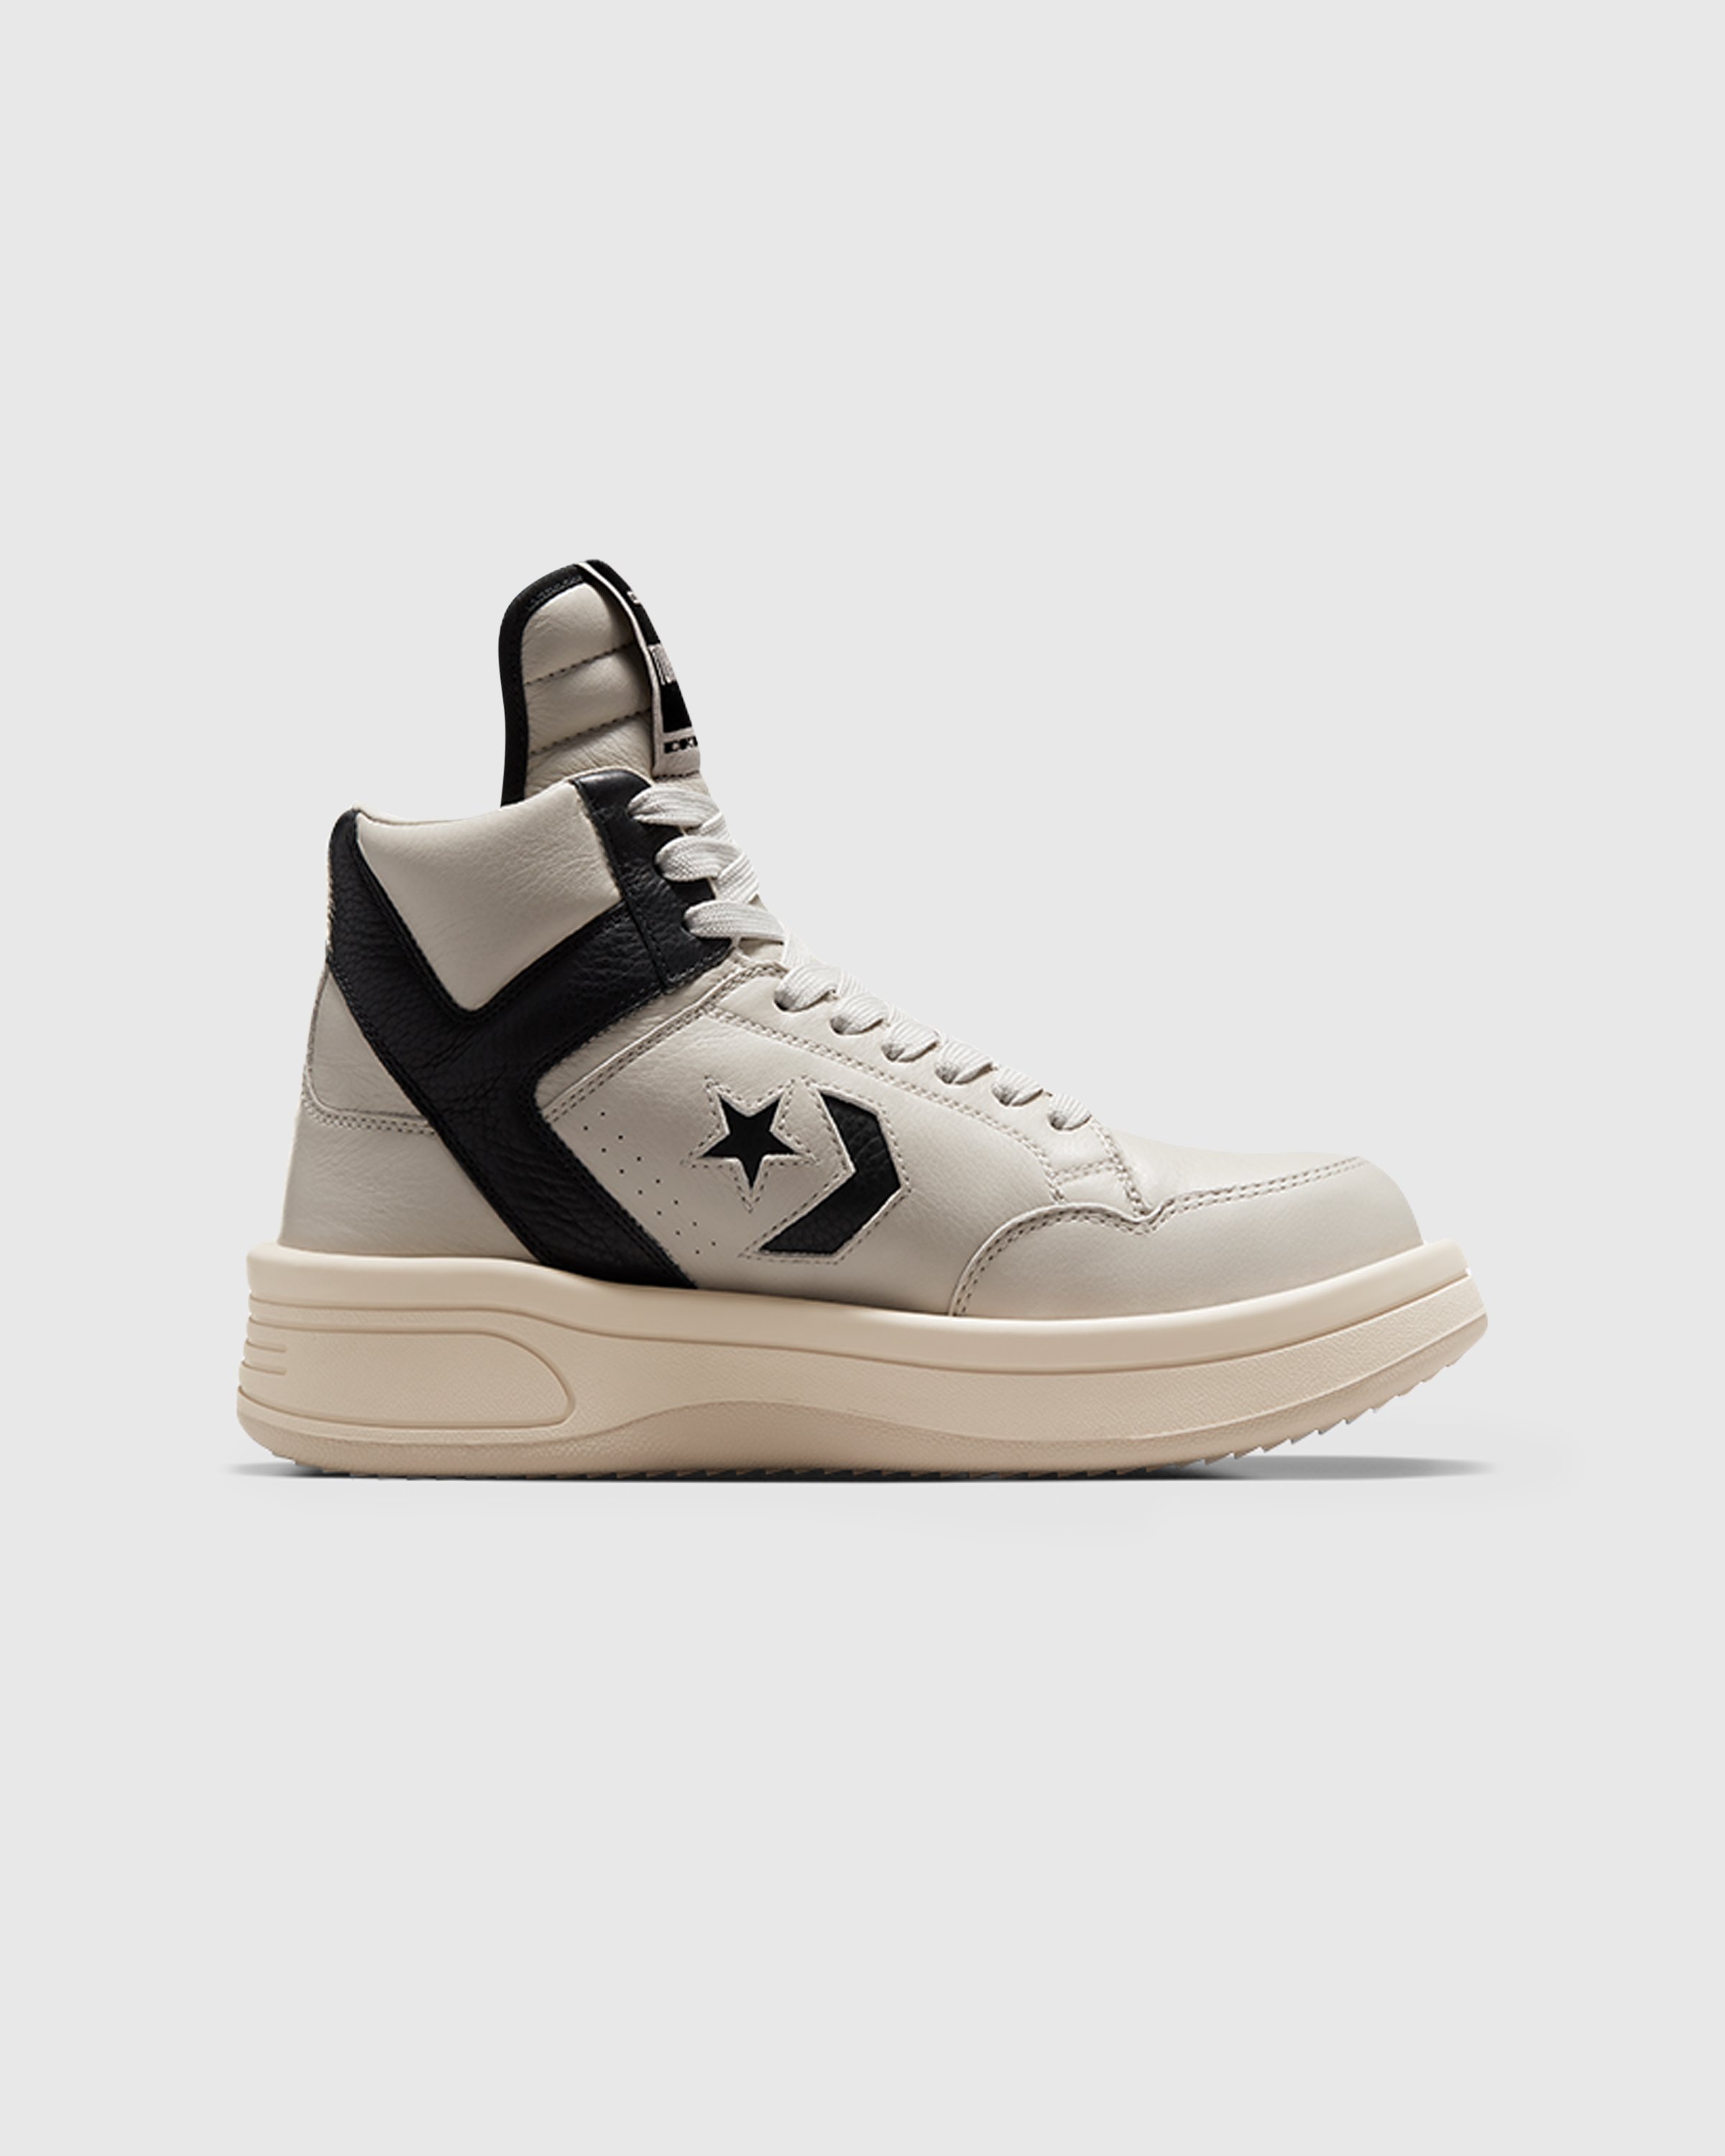 Converse x DRKSHDW - TURBOWPN MID PELICAN/BLACK/CLOUD CREAM - Footwear - Multi - Image 1